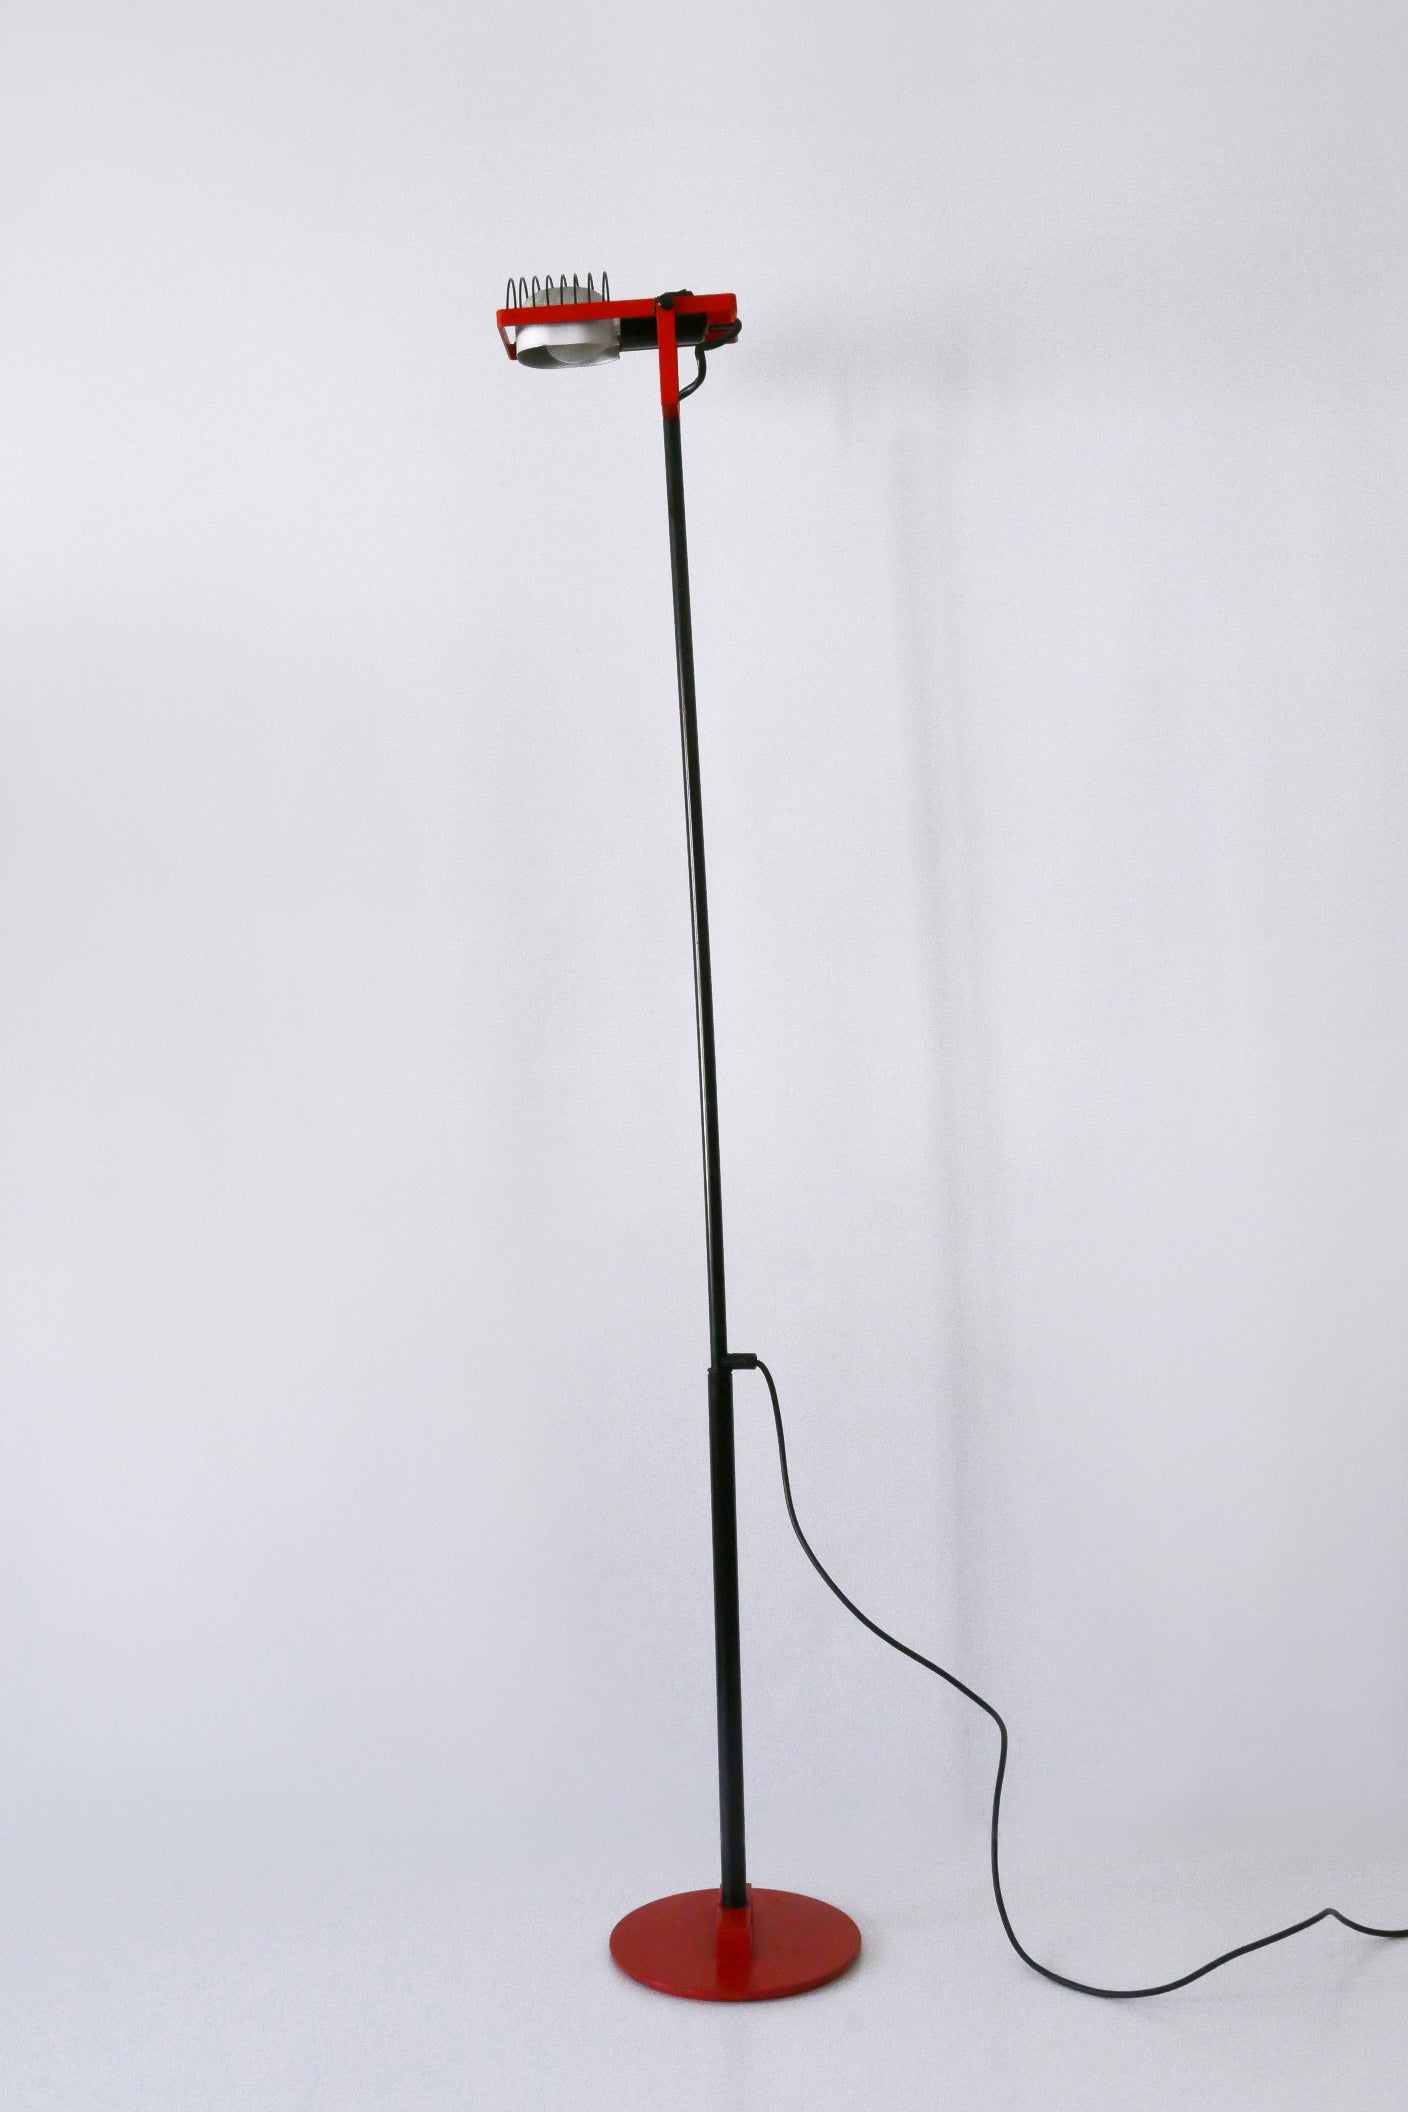 Vintage ausziehbare und drehbare Stehleuchte oder Leselampe 'Sintesi'. Vertikal und horizontal verstellbar. Entworfen von Ernesto Gismondi für Artelmide, Italien, 1970er Jahre. Herstellermarke unter dem Sockel.

Die Lampe ist aus schwarzem, rotem